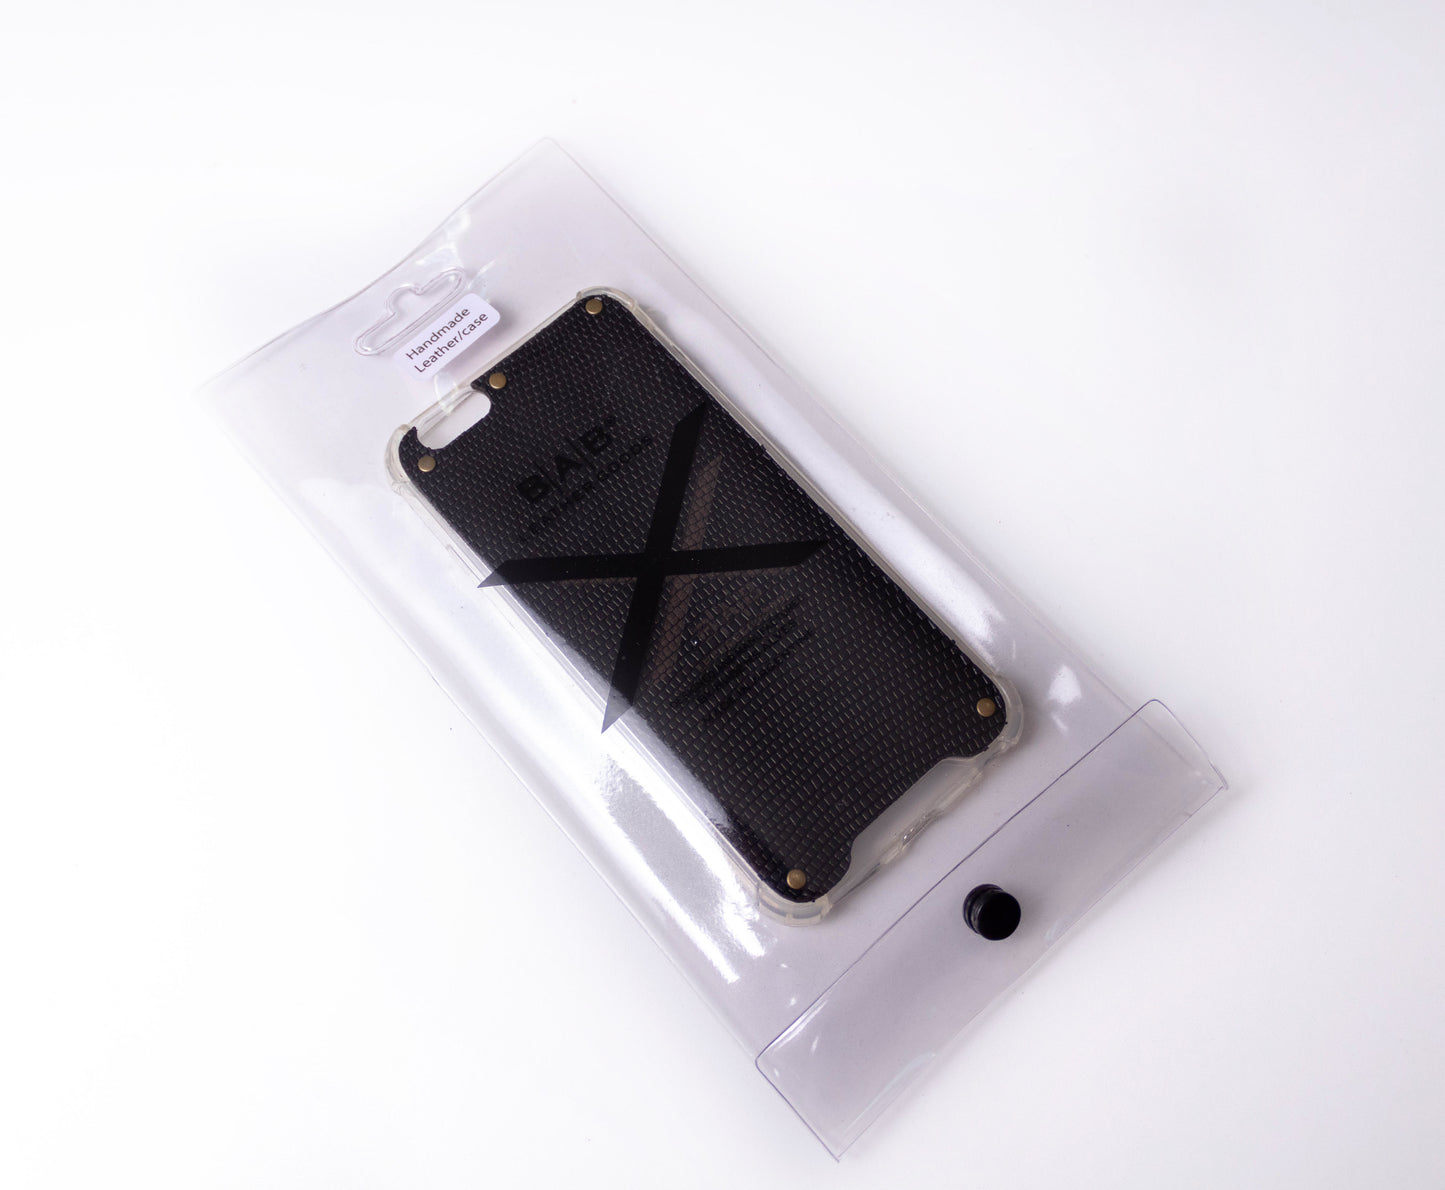 Funda para iPhone de Cuero Genuino Serpiente Negra Texturizado cortado y grabado con láser, 5 Remaches de Bronce.- F36